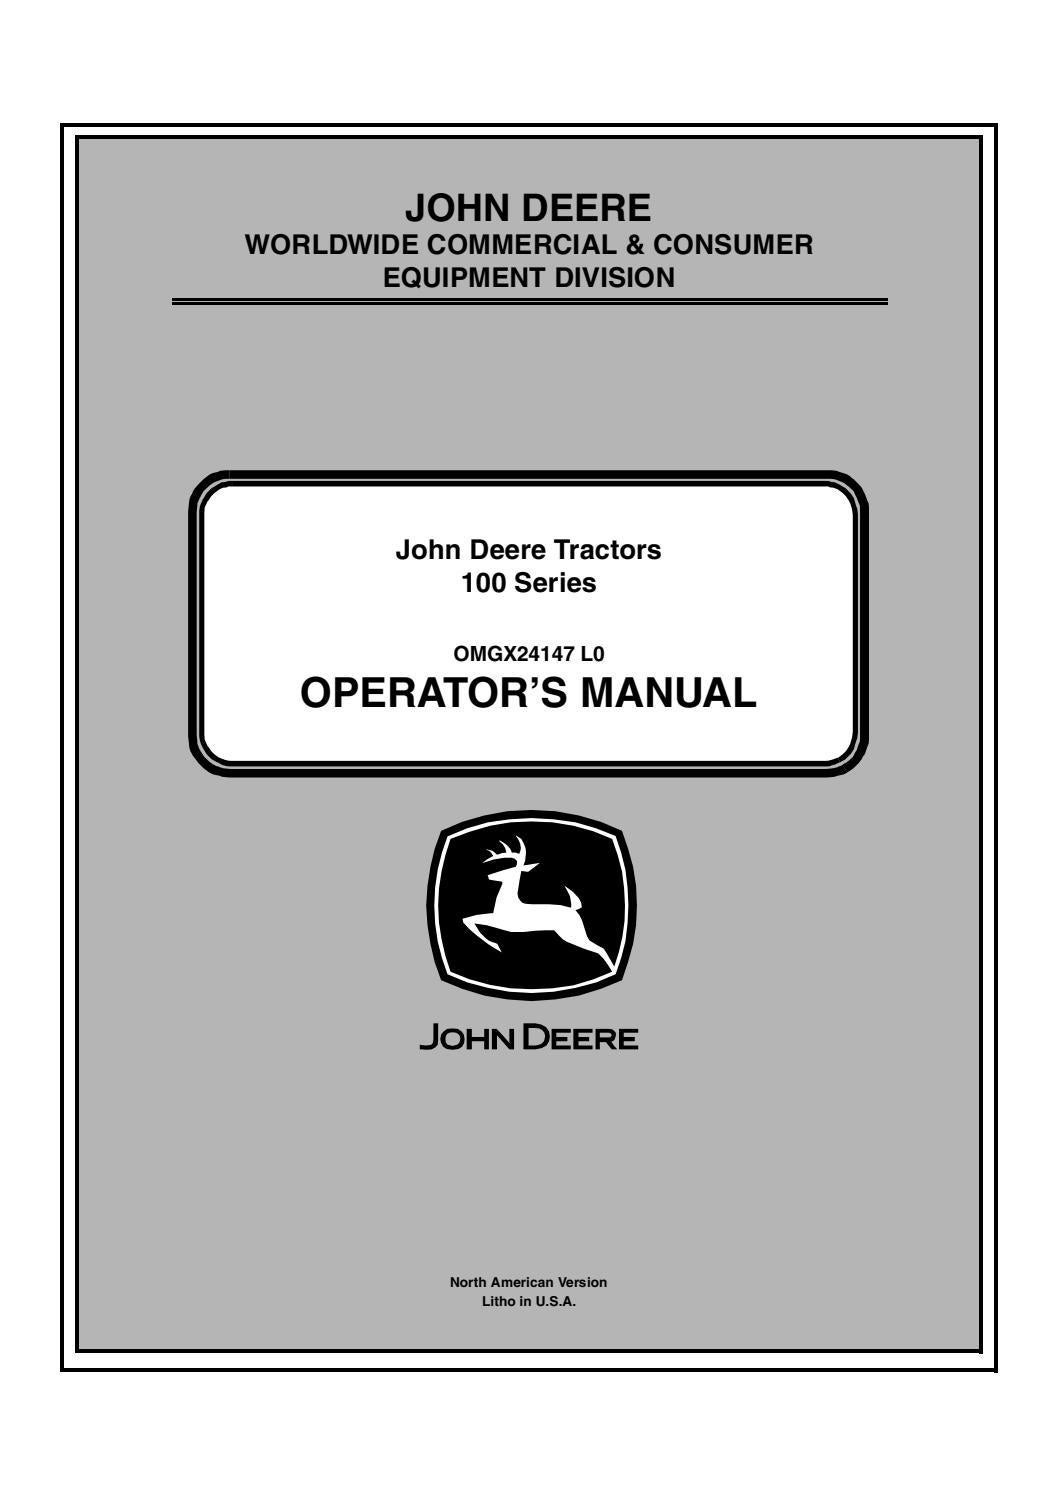 Electrical Diagram for John Deere D100 John Deere D100 Lawn Tractors Operator’s Manual Instant Download … Of Electrical Diagram for John Deere D100